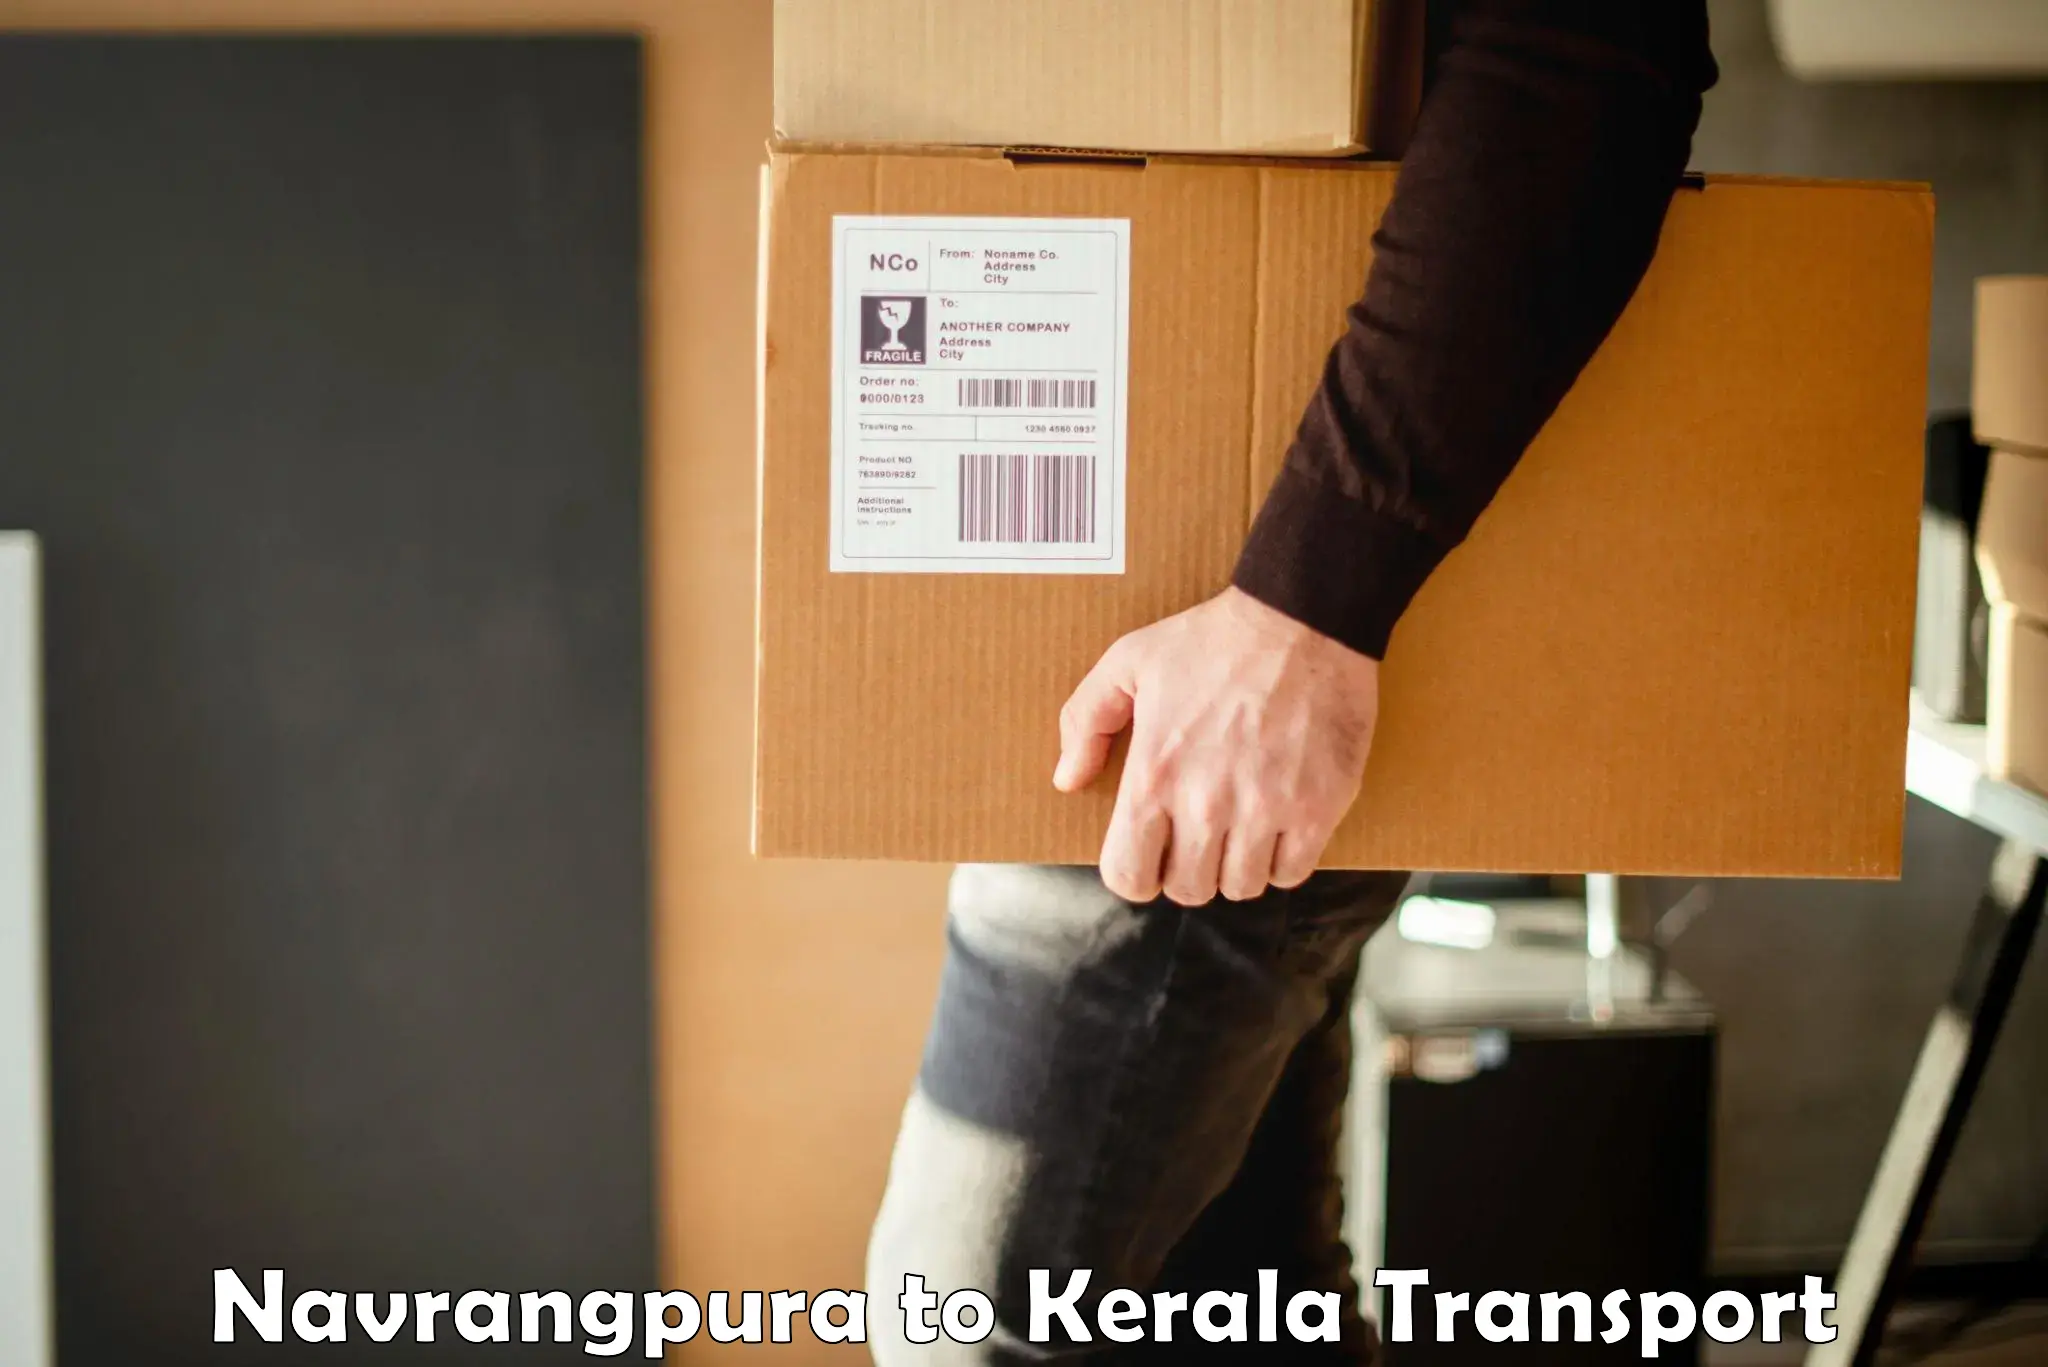 Daily transport service Navrangpura to Kerala